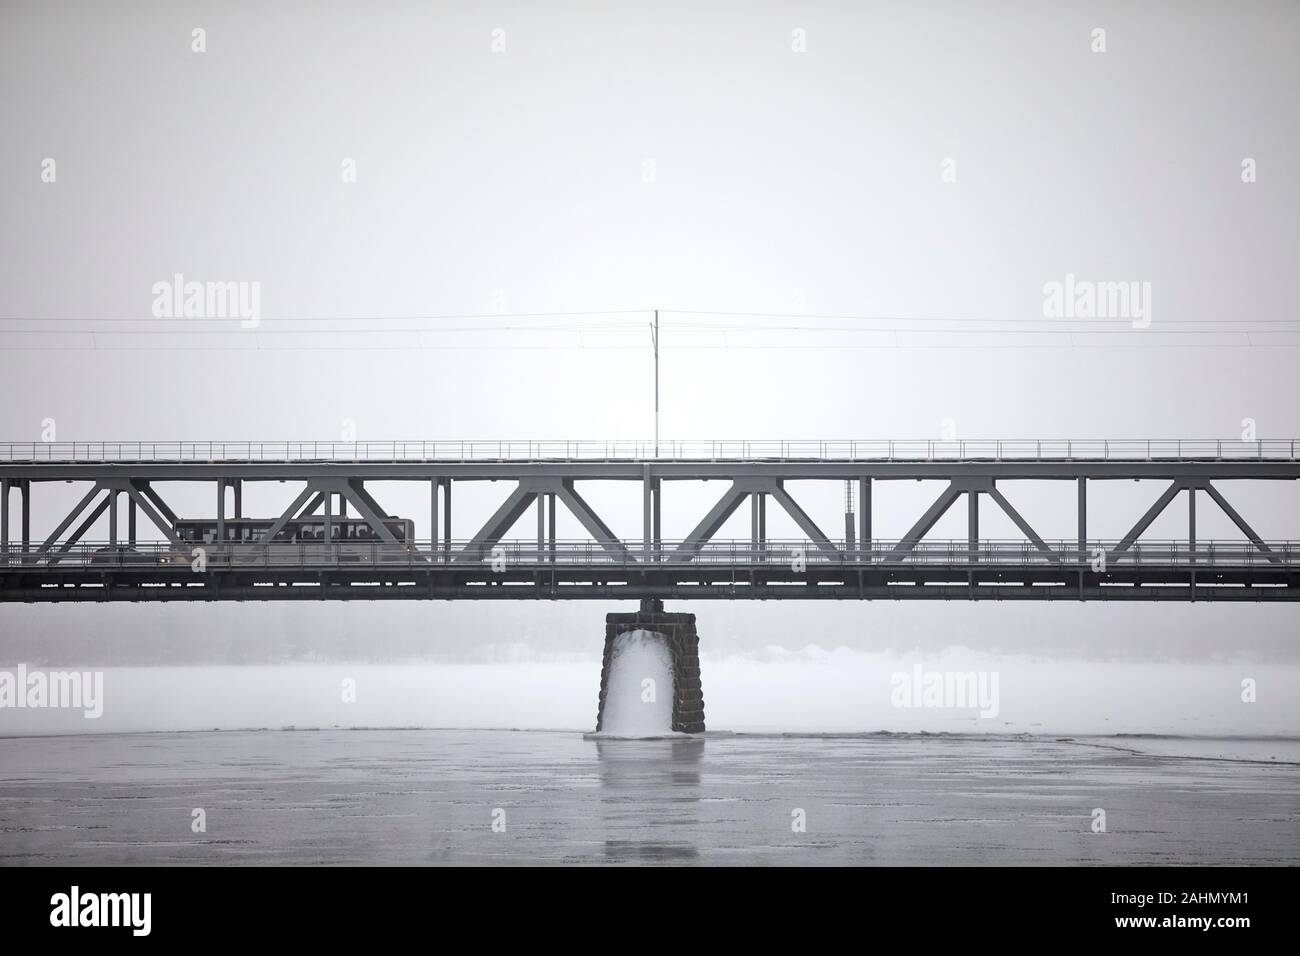 Finnische Rovaniemi eine Stadt in Finnland und der Region Lappland, ounaskoski Eisenbahnbrücke kombinierte Straßen- und Eisenbahnbrücke überspannt den Fluss Kemijoki Stockfoto